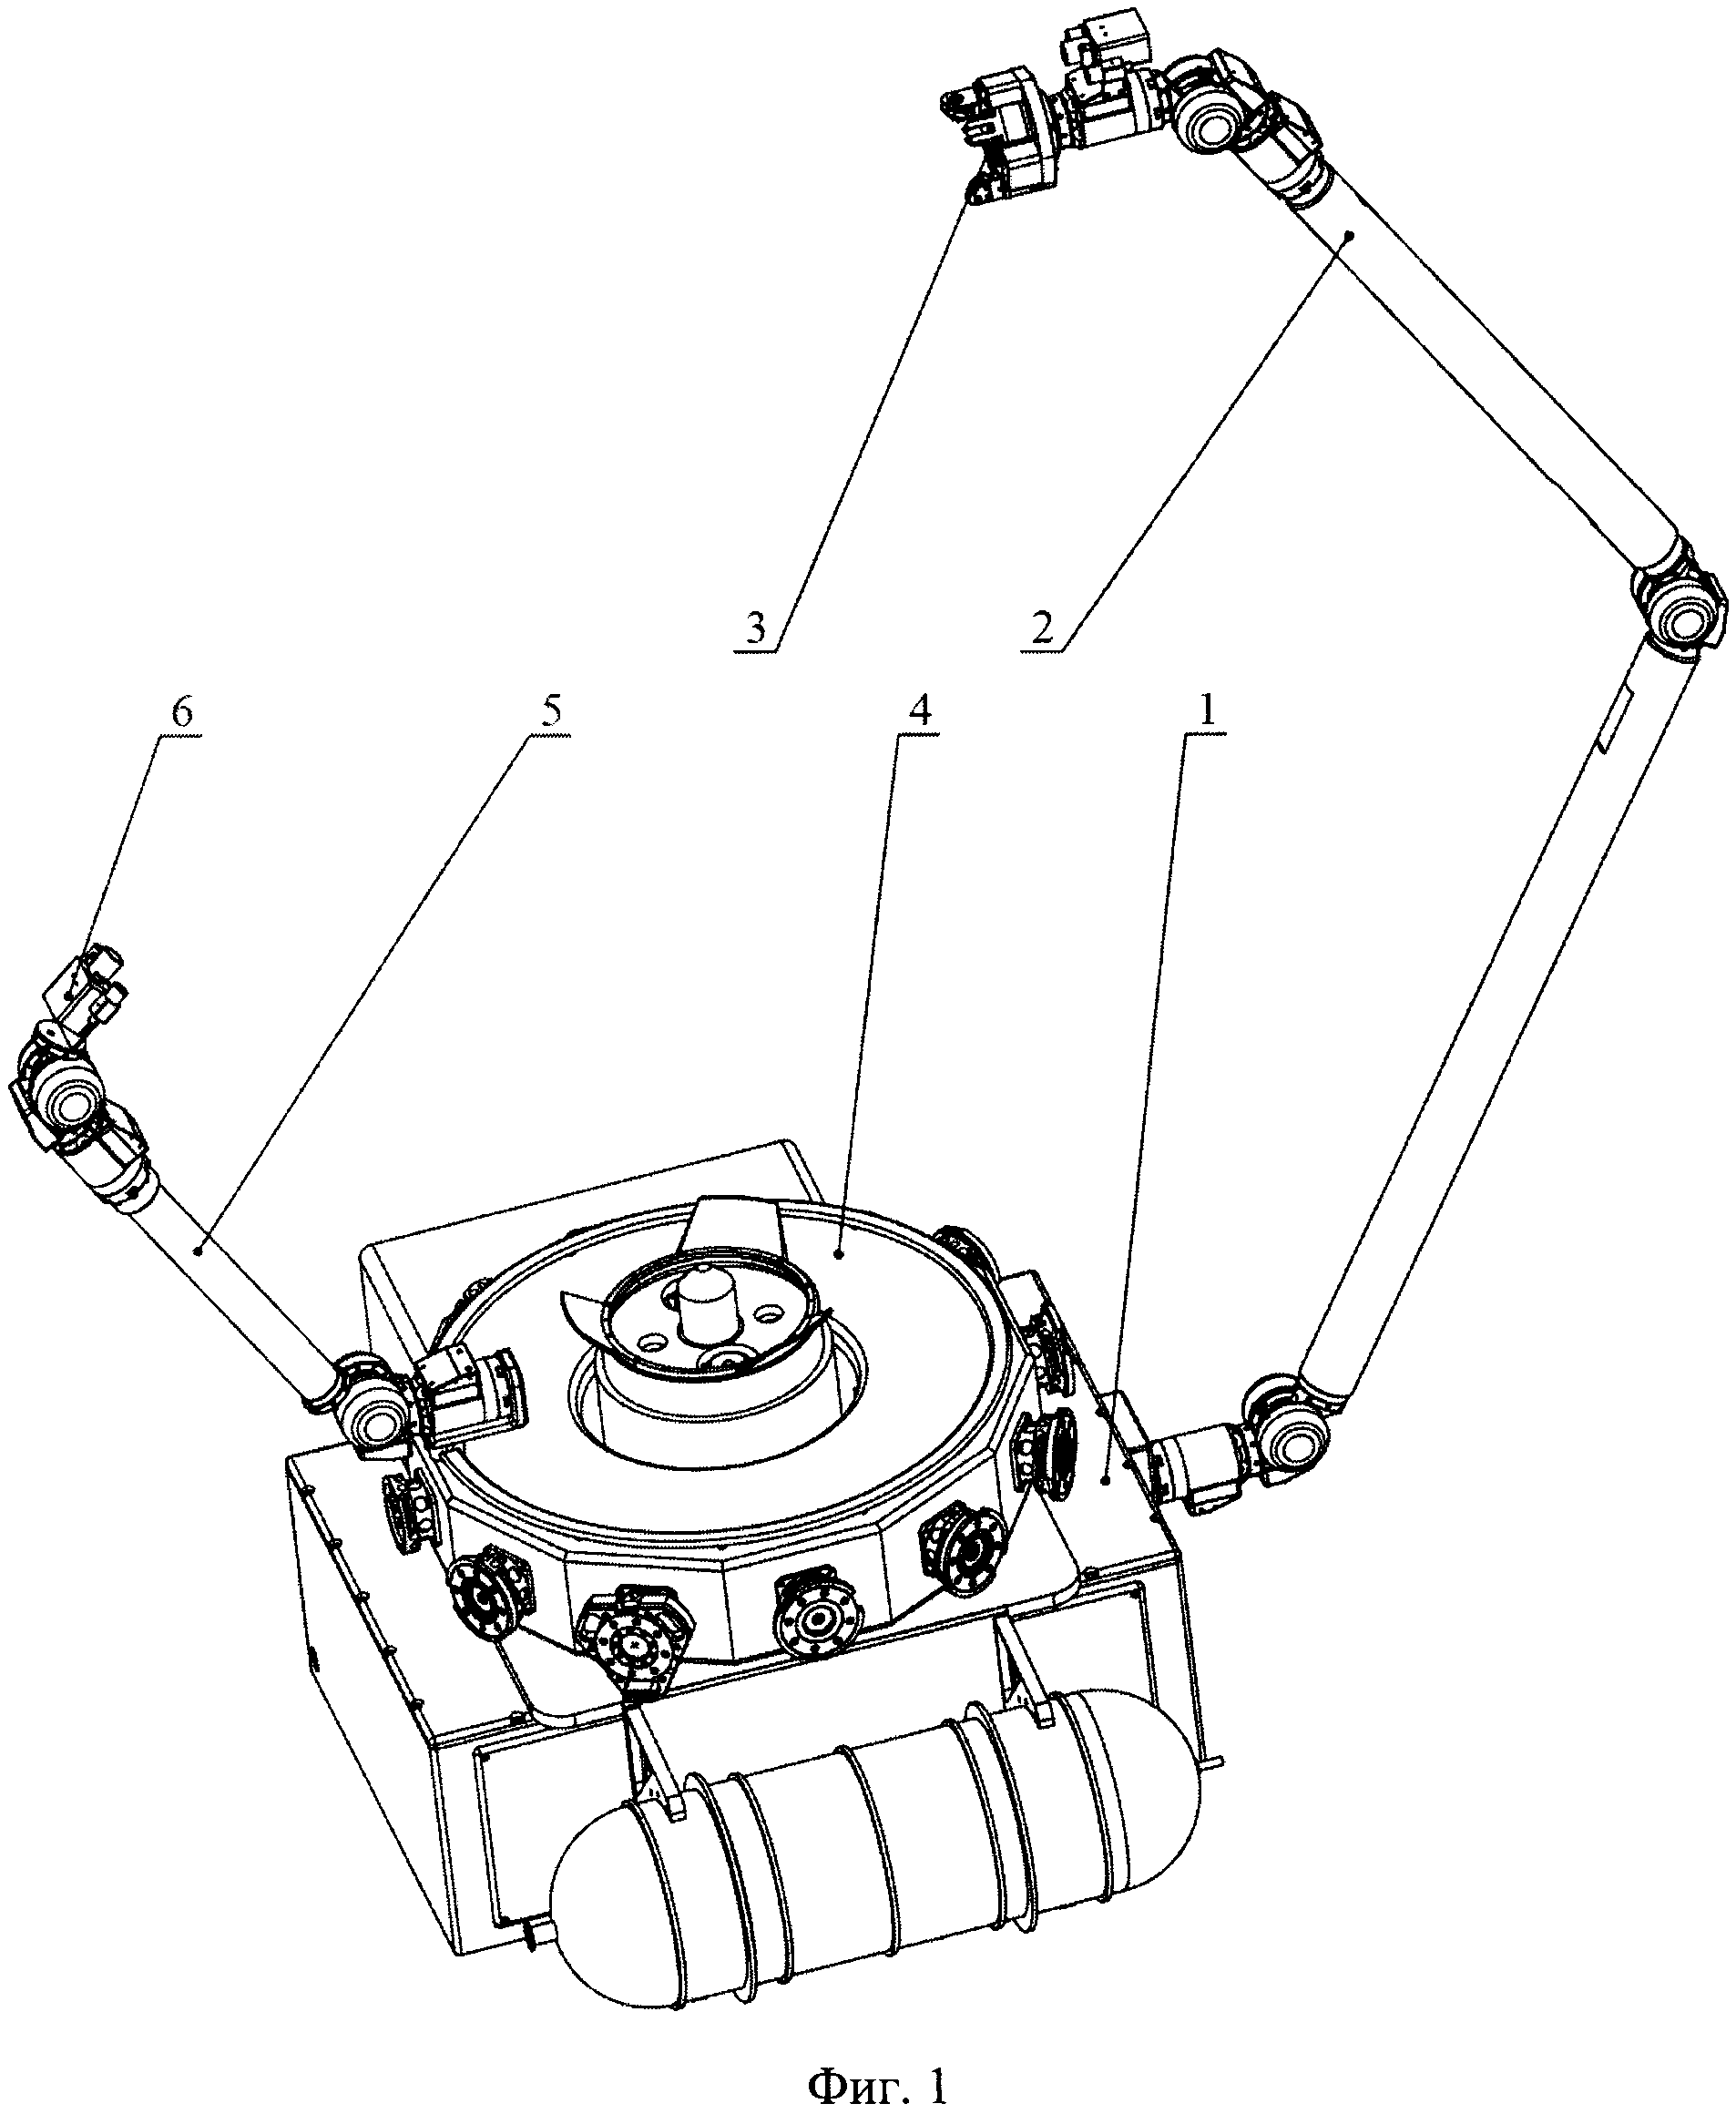 Робототехническая система сервисного космического аппарата с силомоментной обратной связью